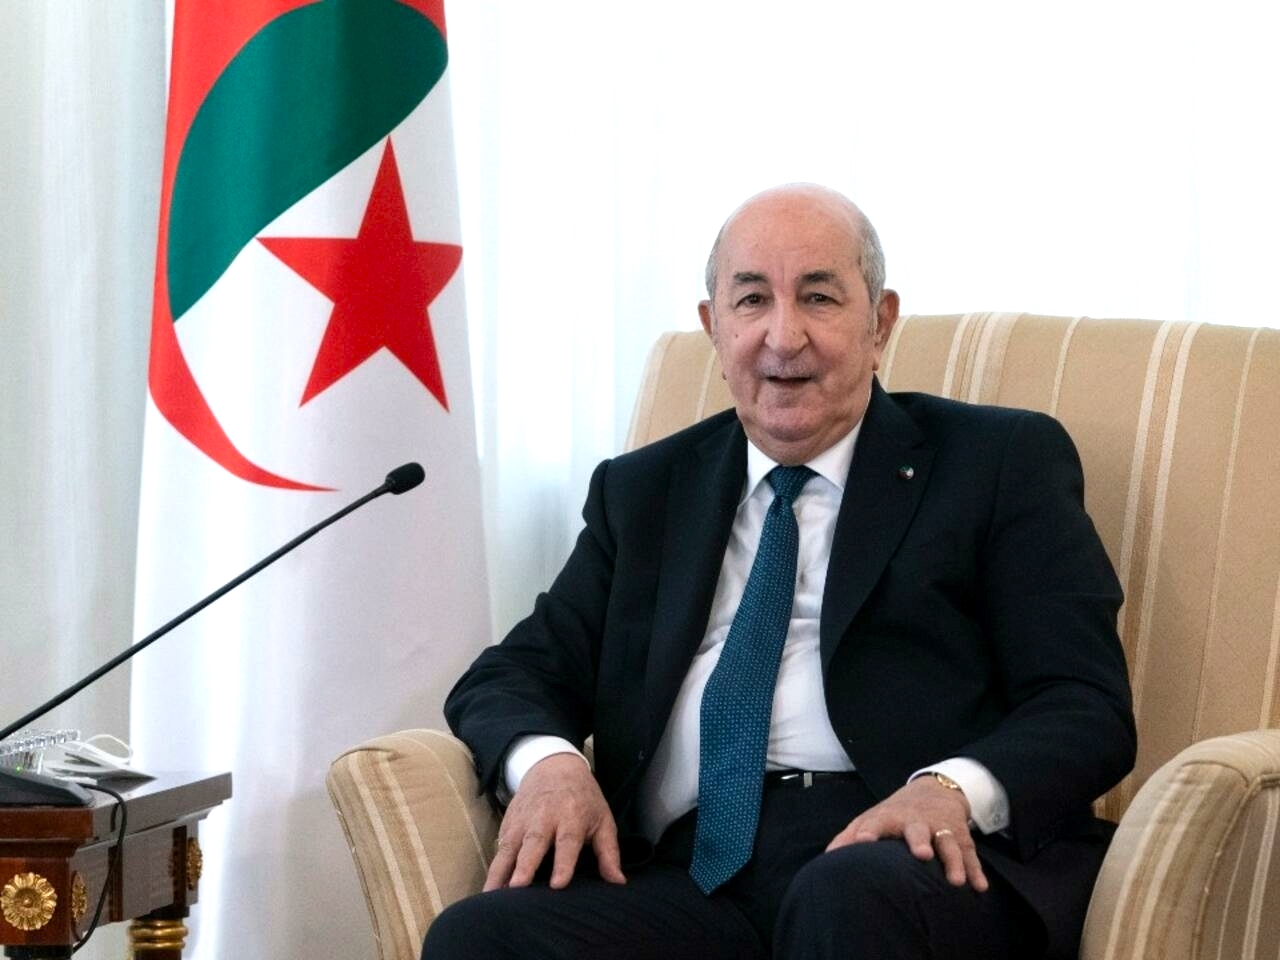 L'Algérie suspend son traité de coopération avec l'Espagne